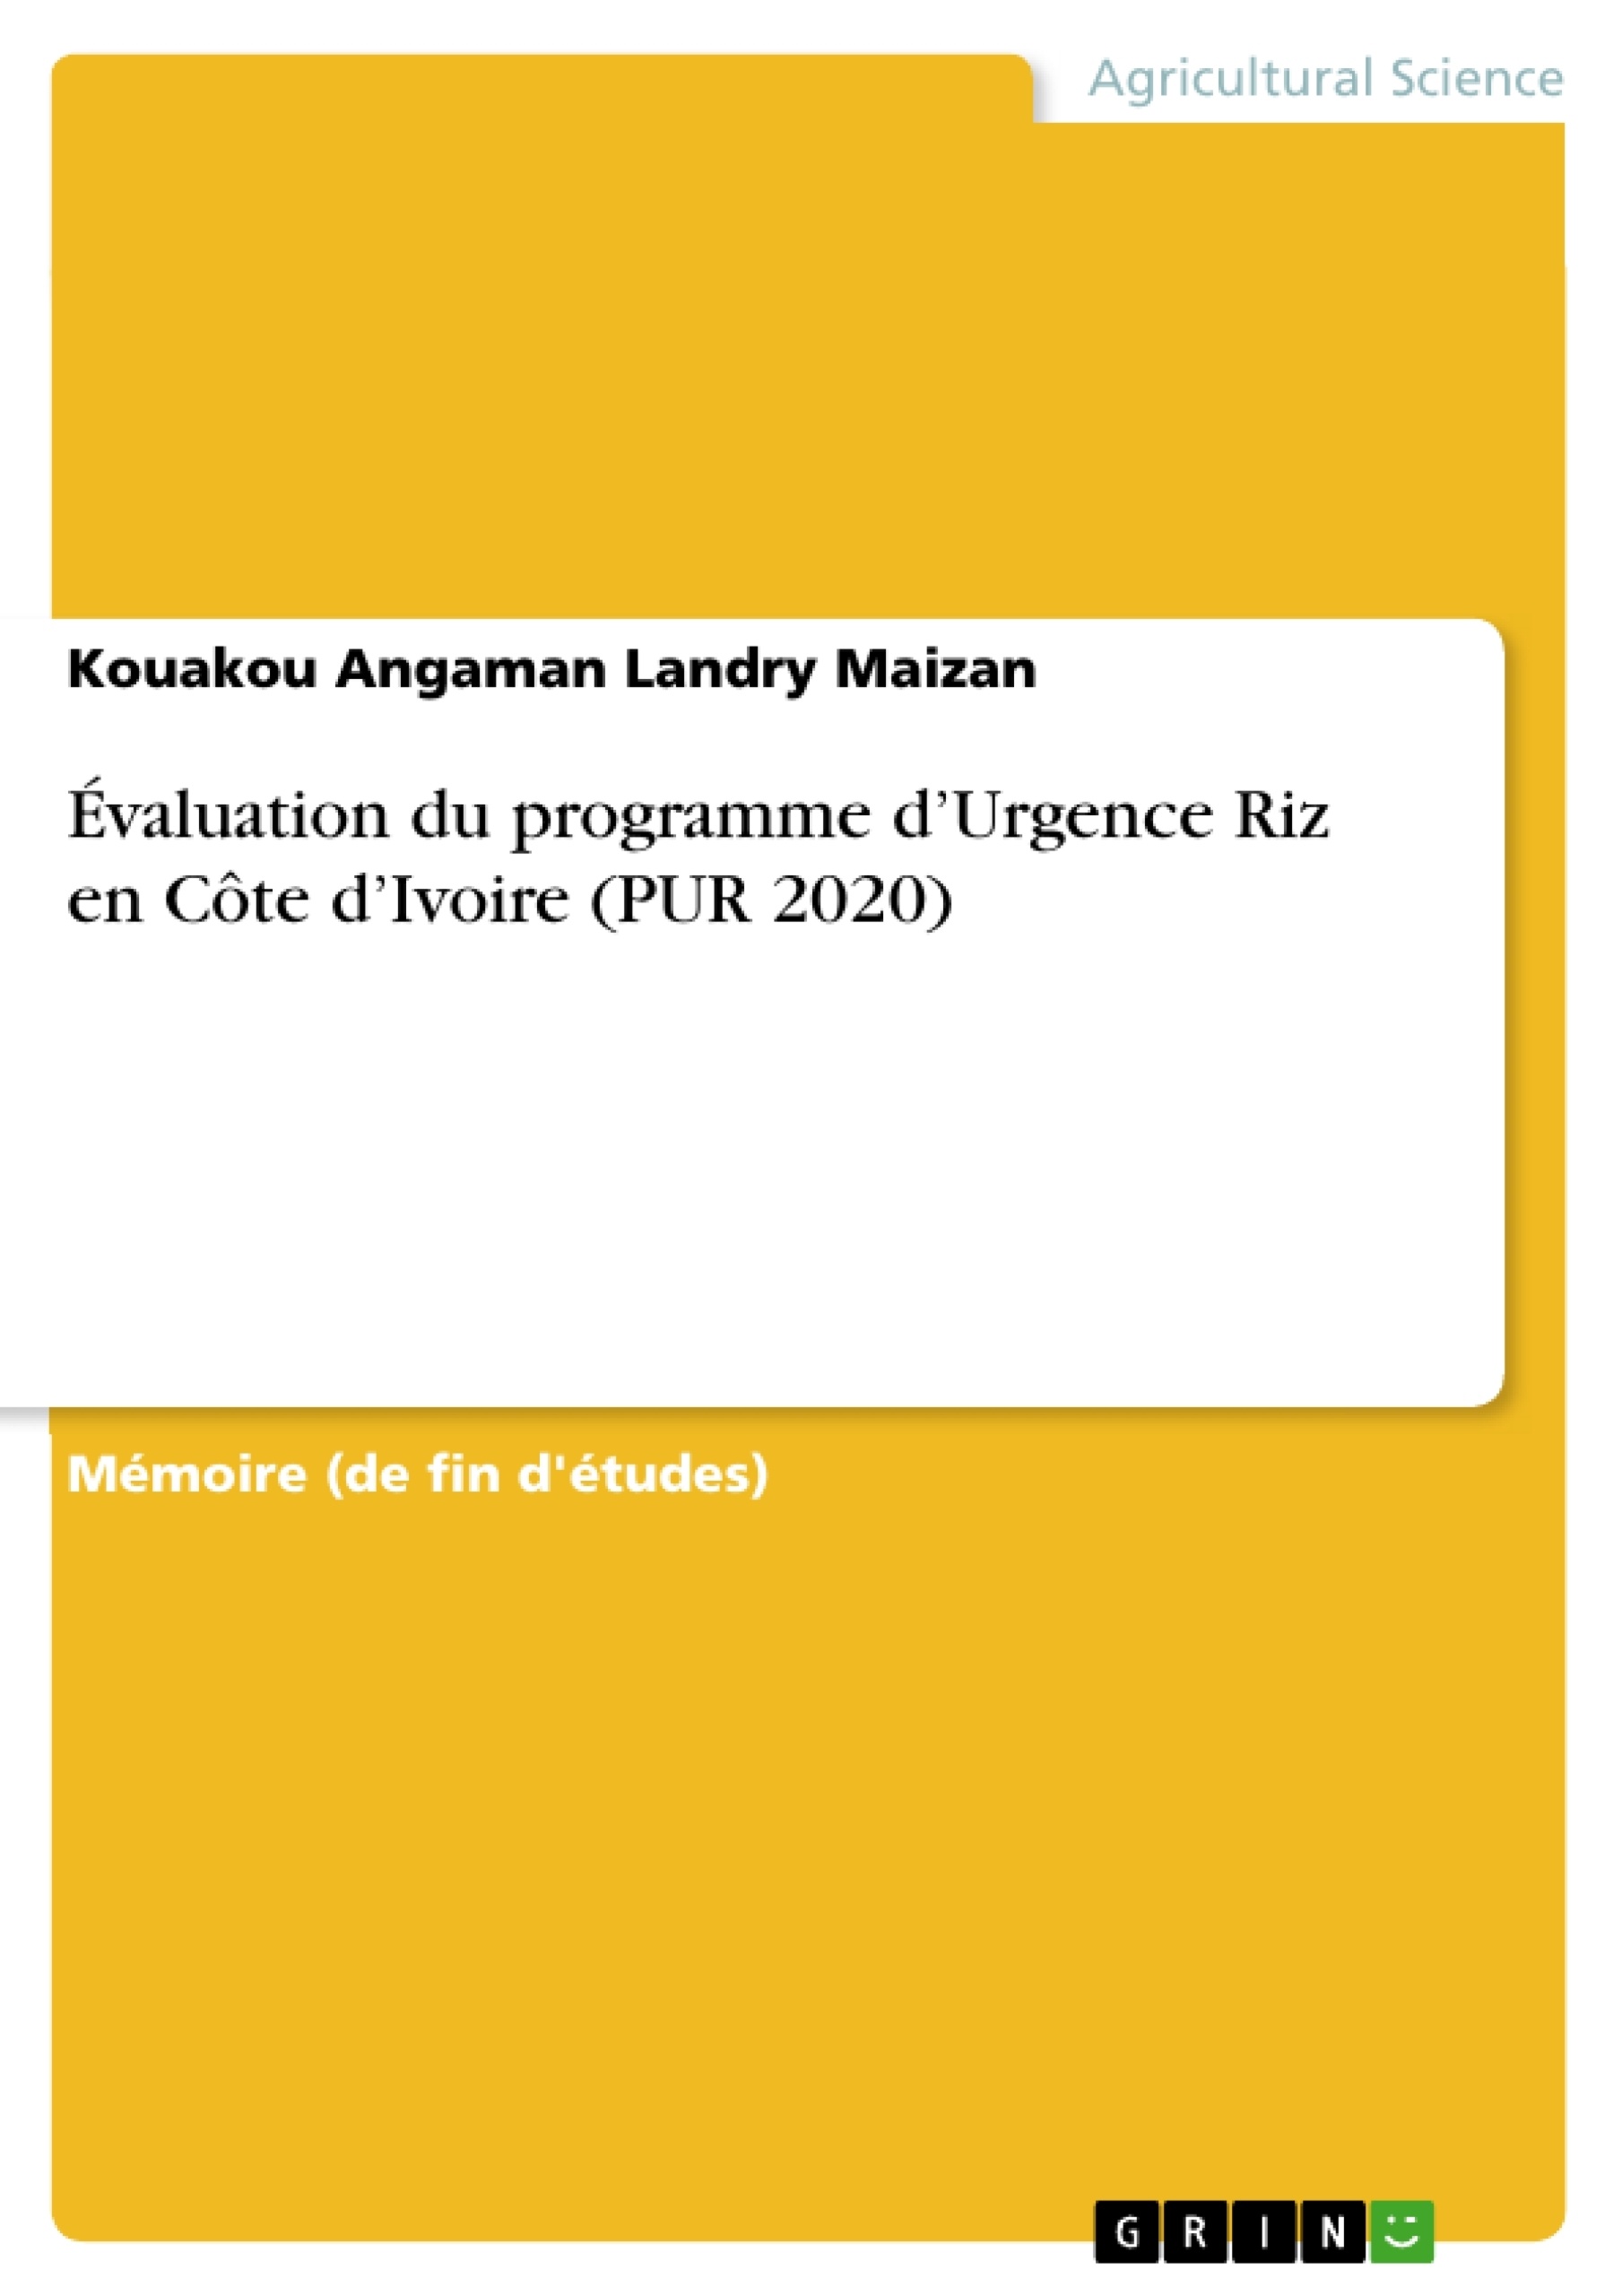 Titre: Évaluation du programme d’Urgence Riz en Côte d’Ivoire (PUR 2020)